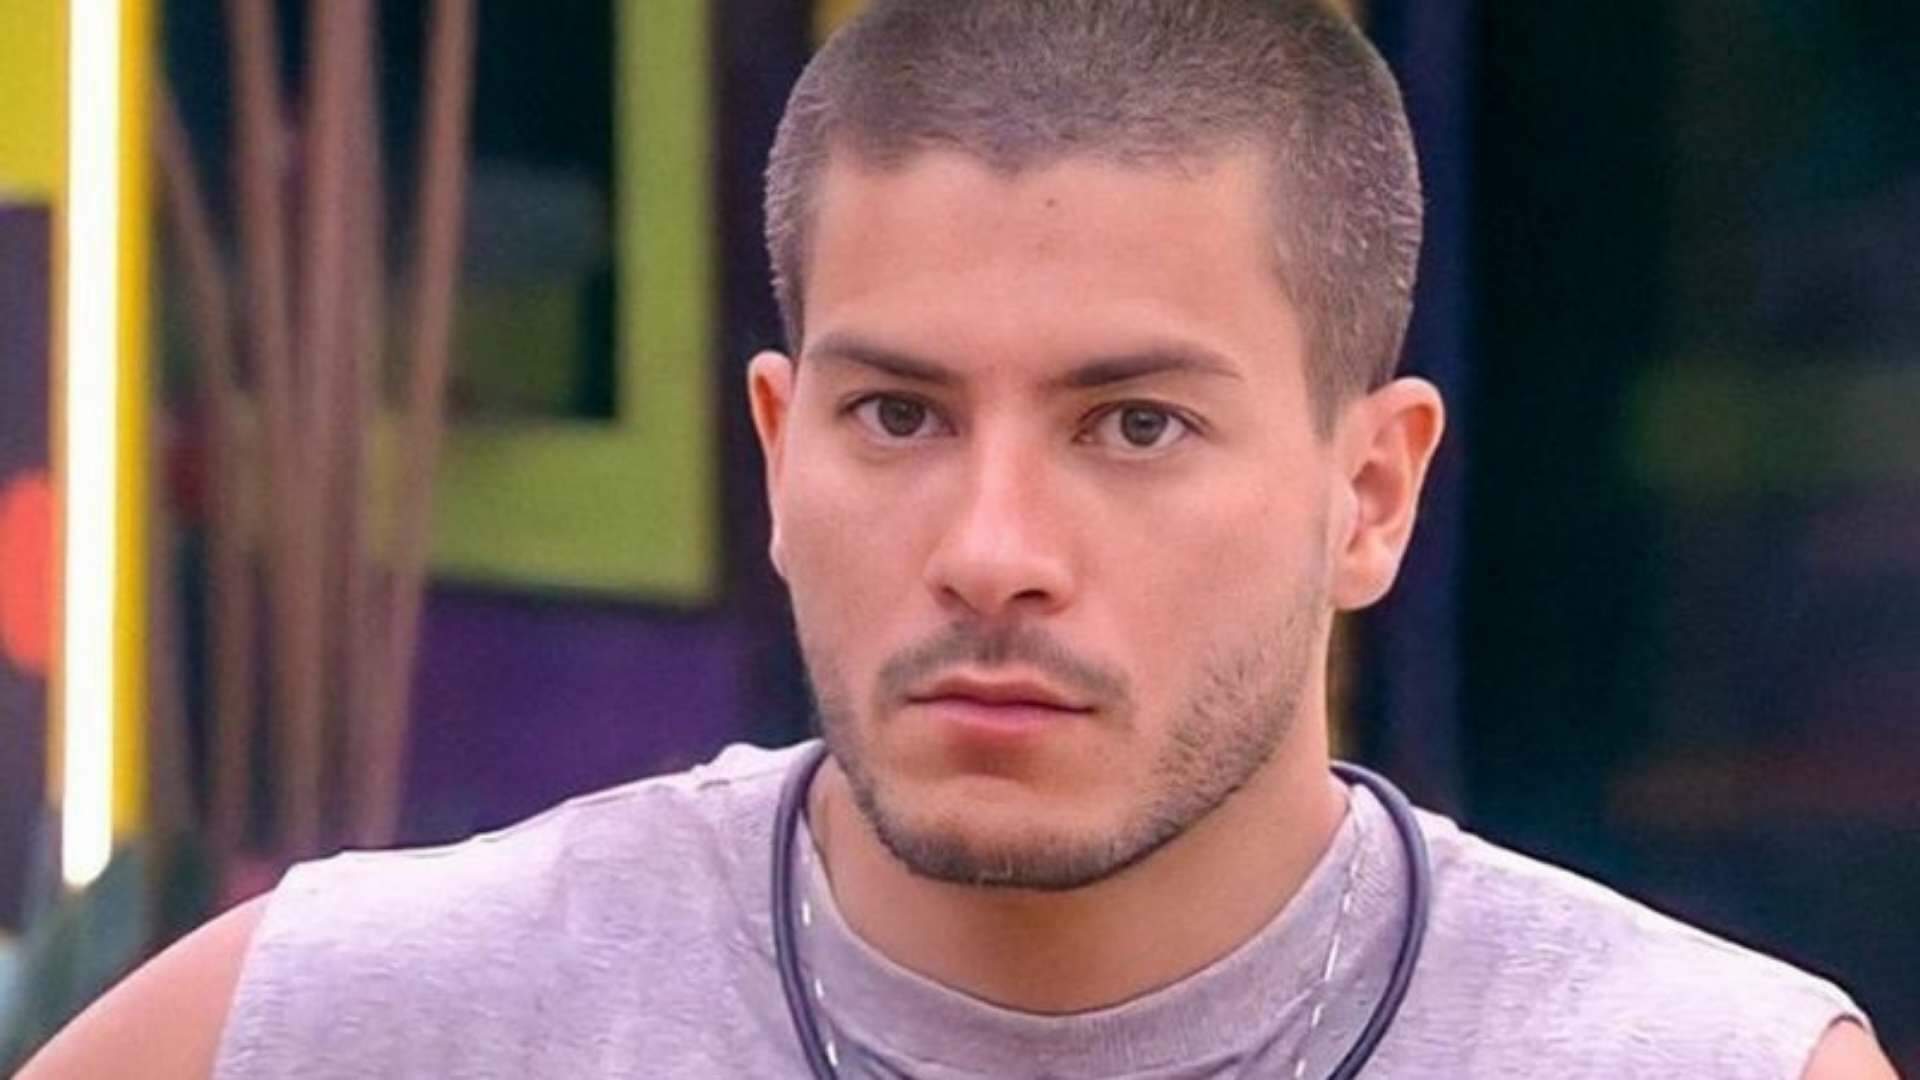 Arthur Aguiar se pronuncia após ser rejeitado pela Globo: “Cansado de ficar calado” - Metropolitana FM